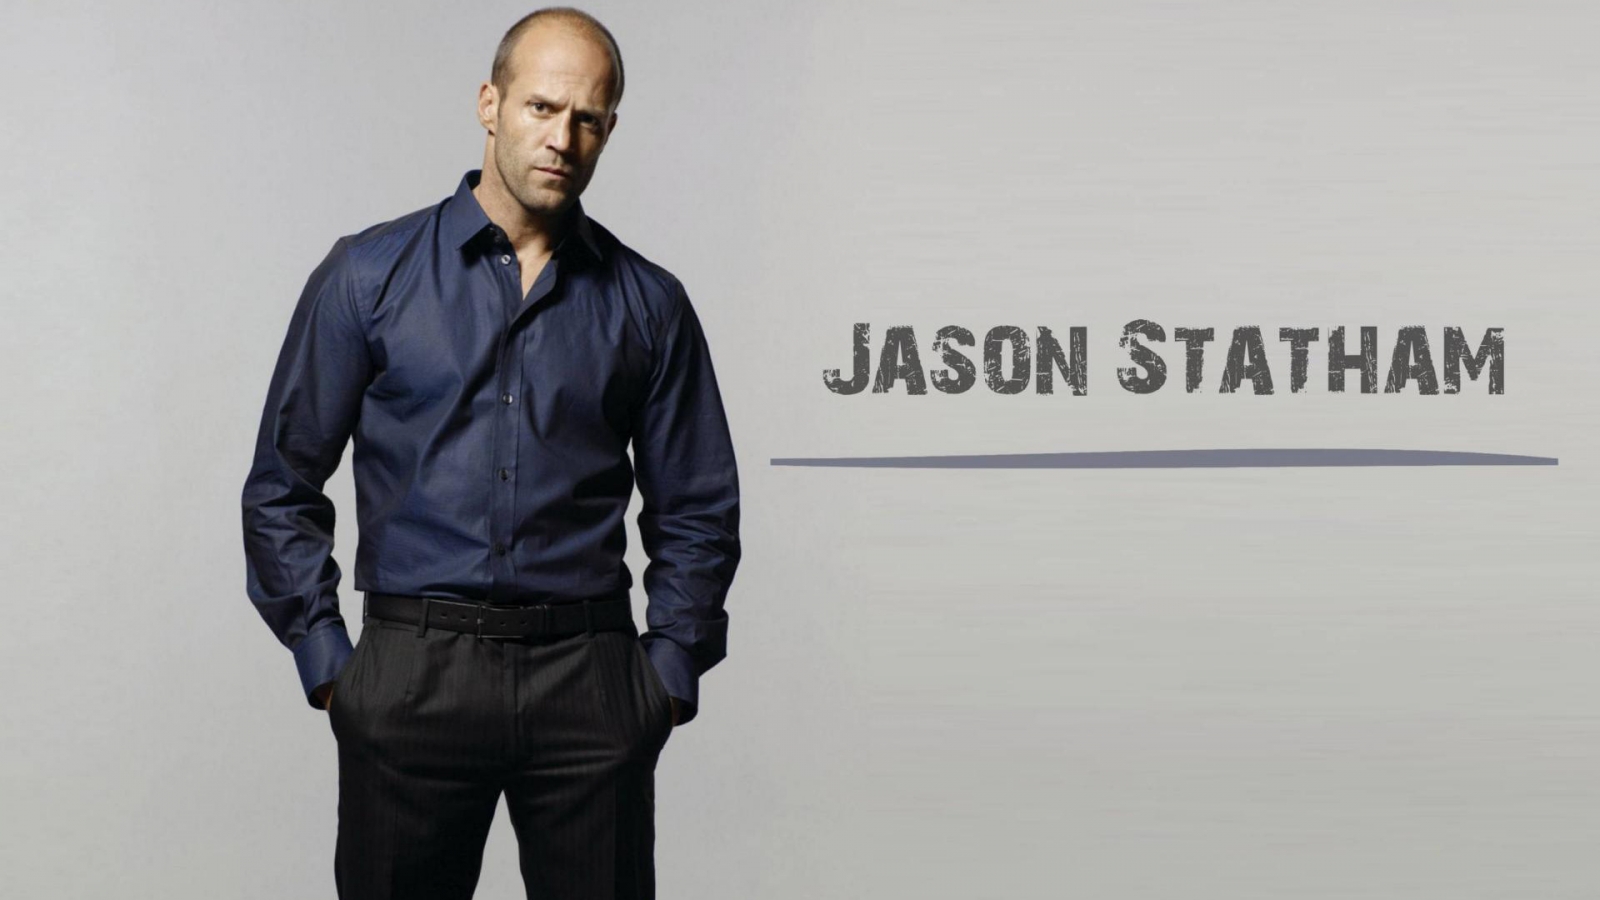 Jason Statham Poster for 1600 x 900 HDTV resolution